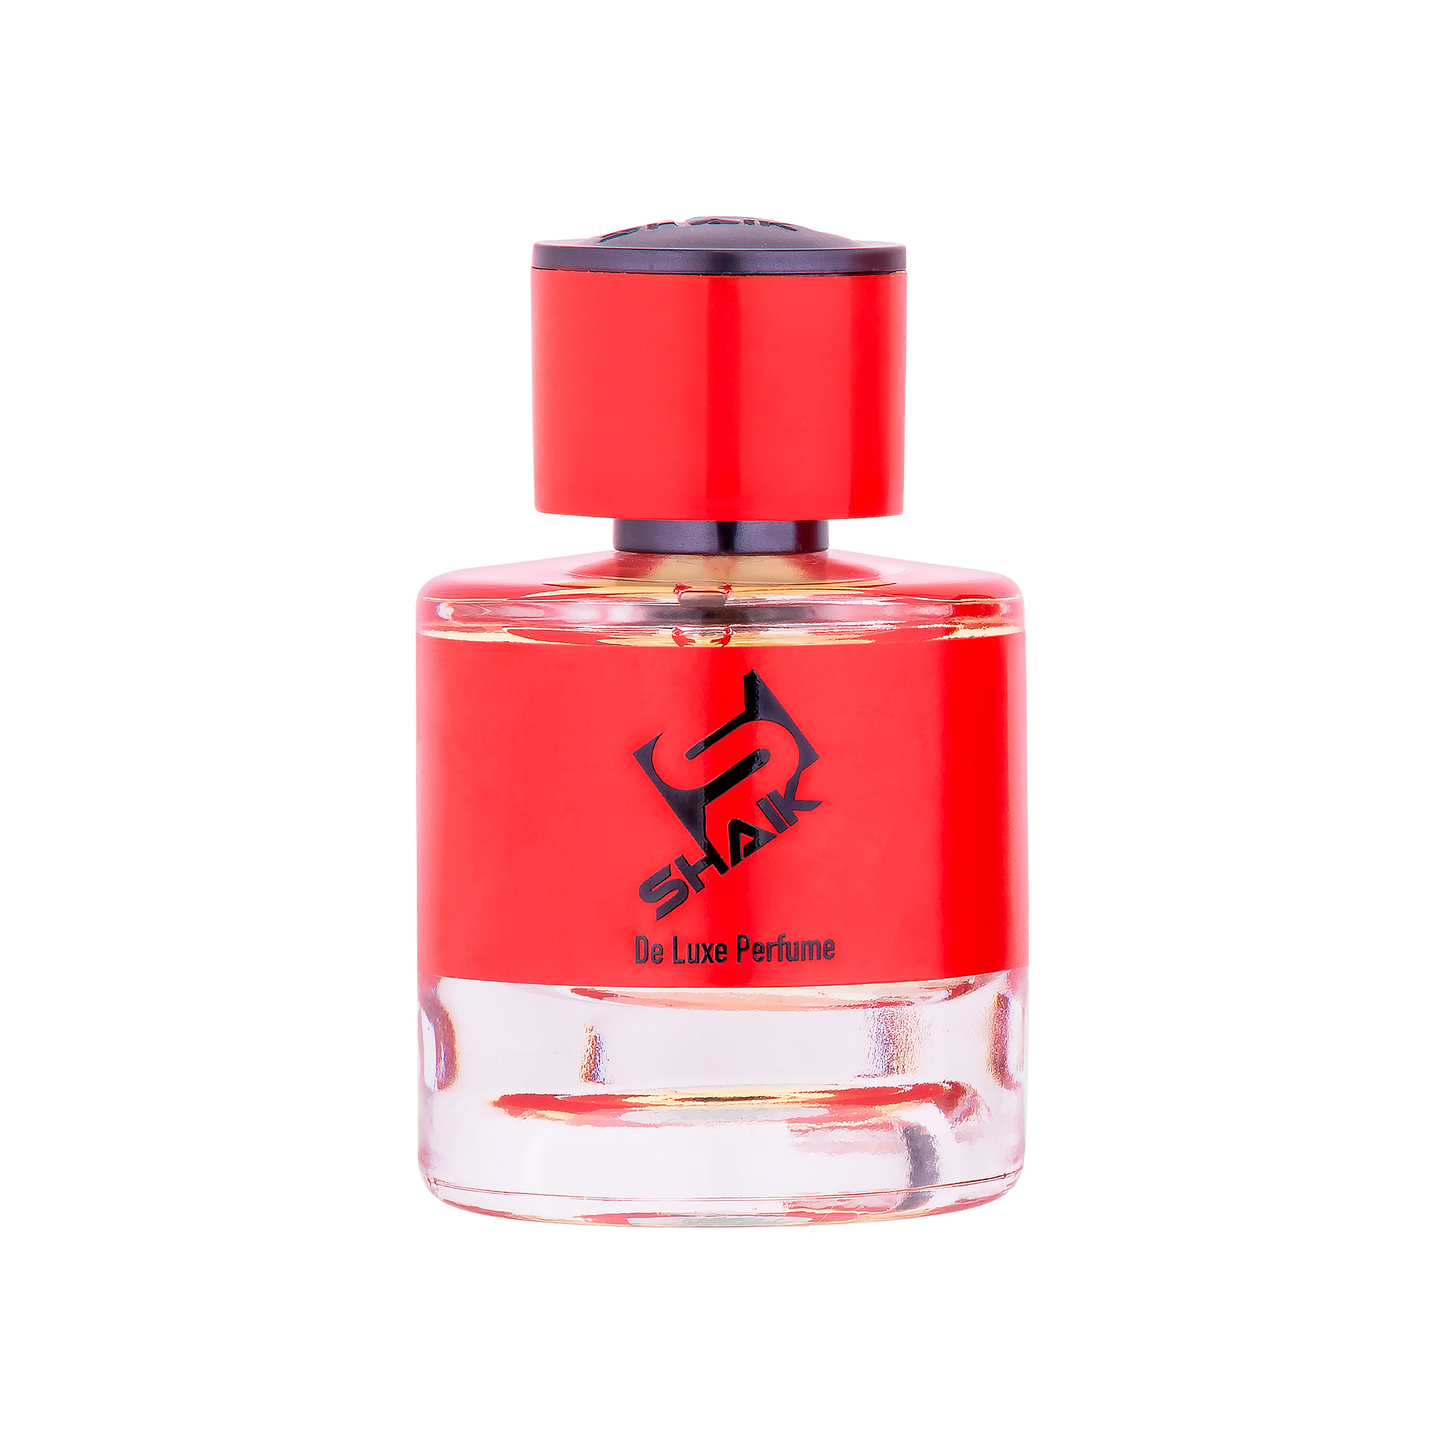 Shaik Rich - 165 - Niche perfume - Shaik Perfume